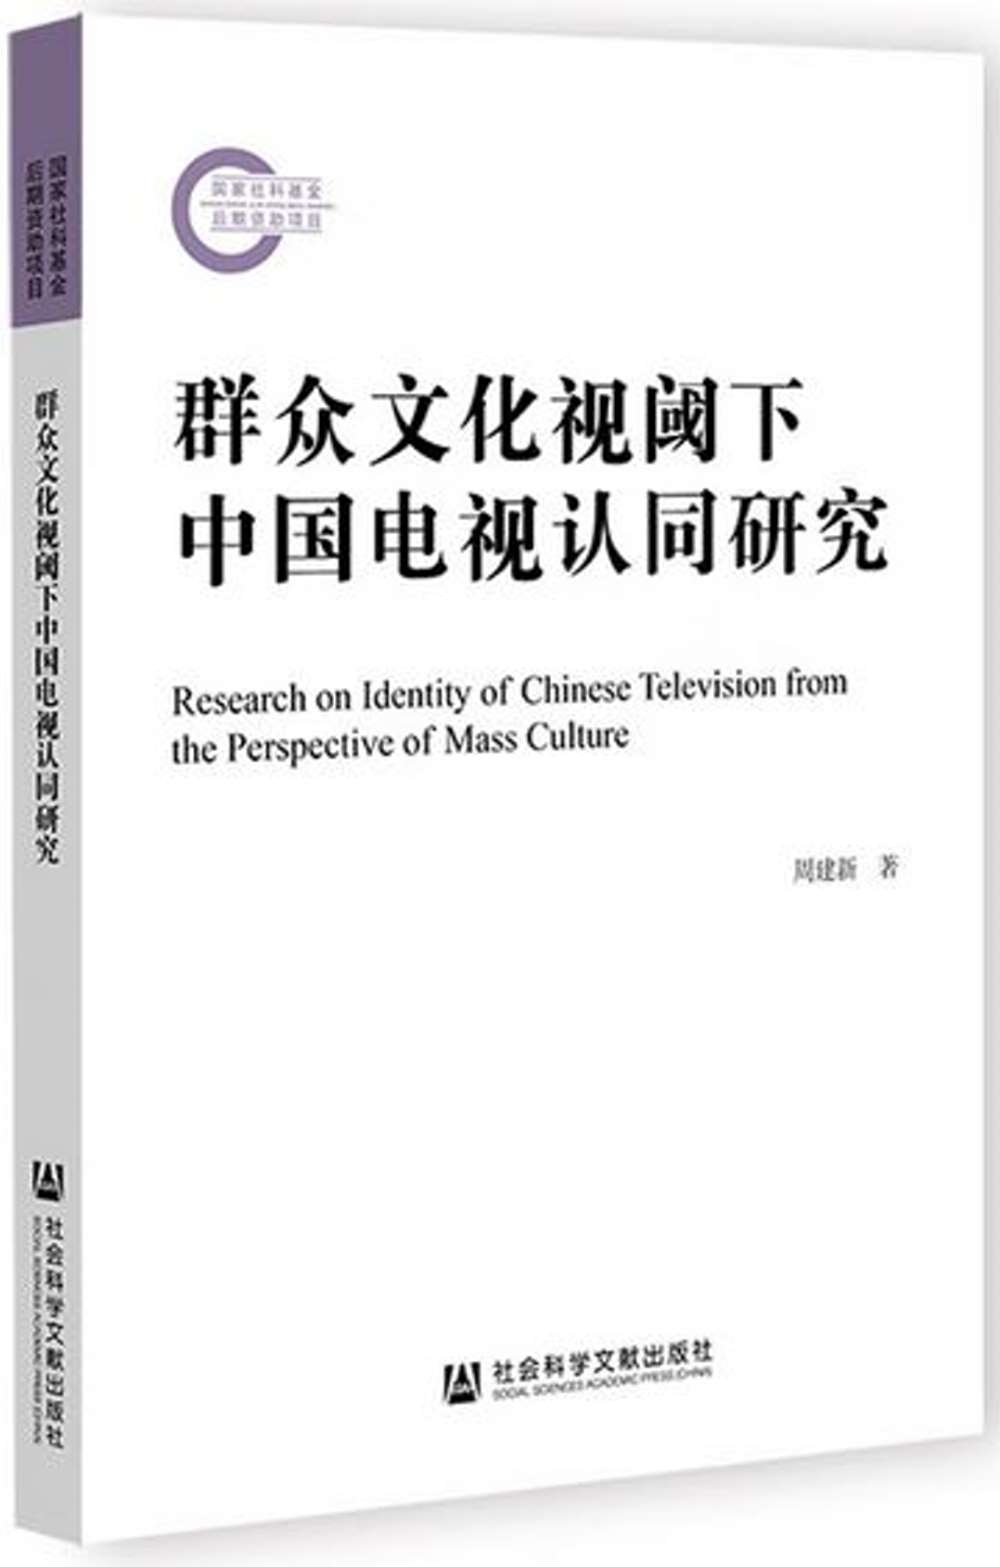 群眾文化視閾下中國電視認同研究